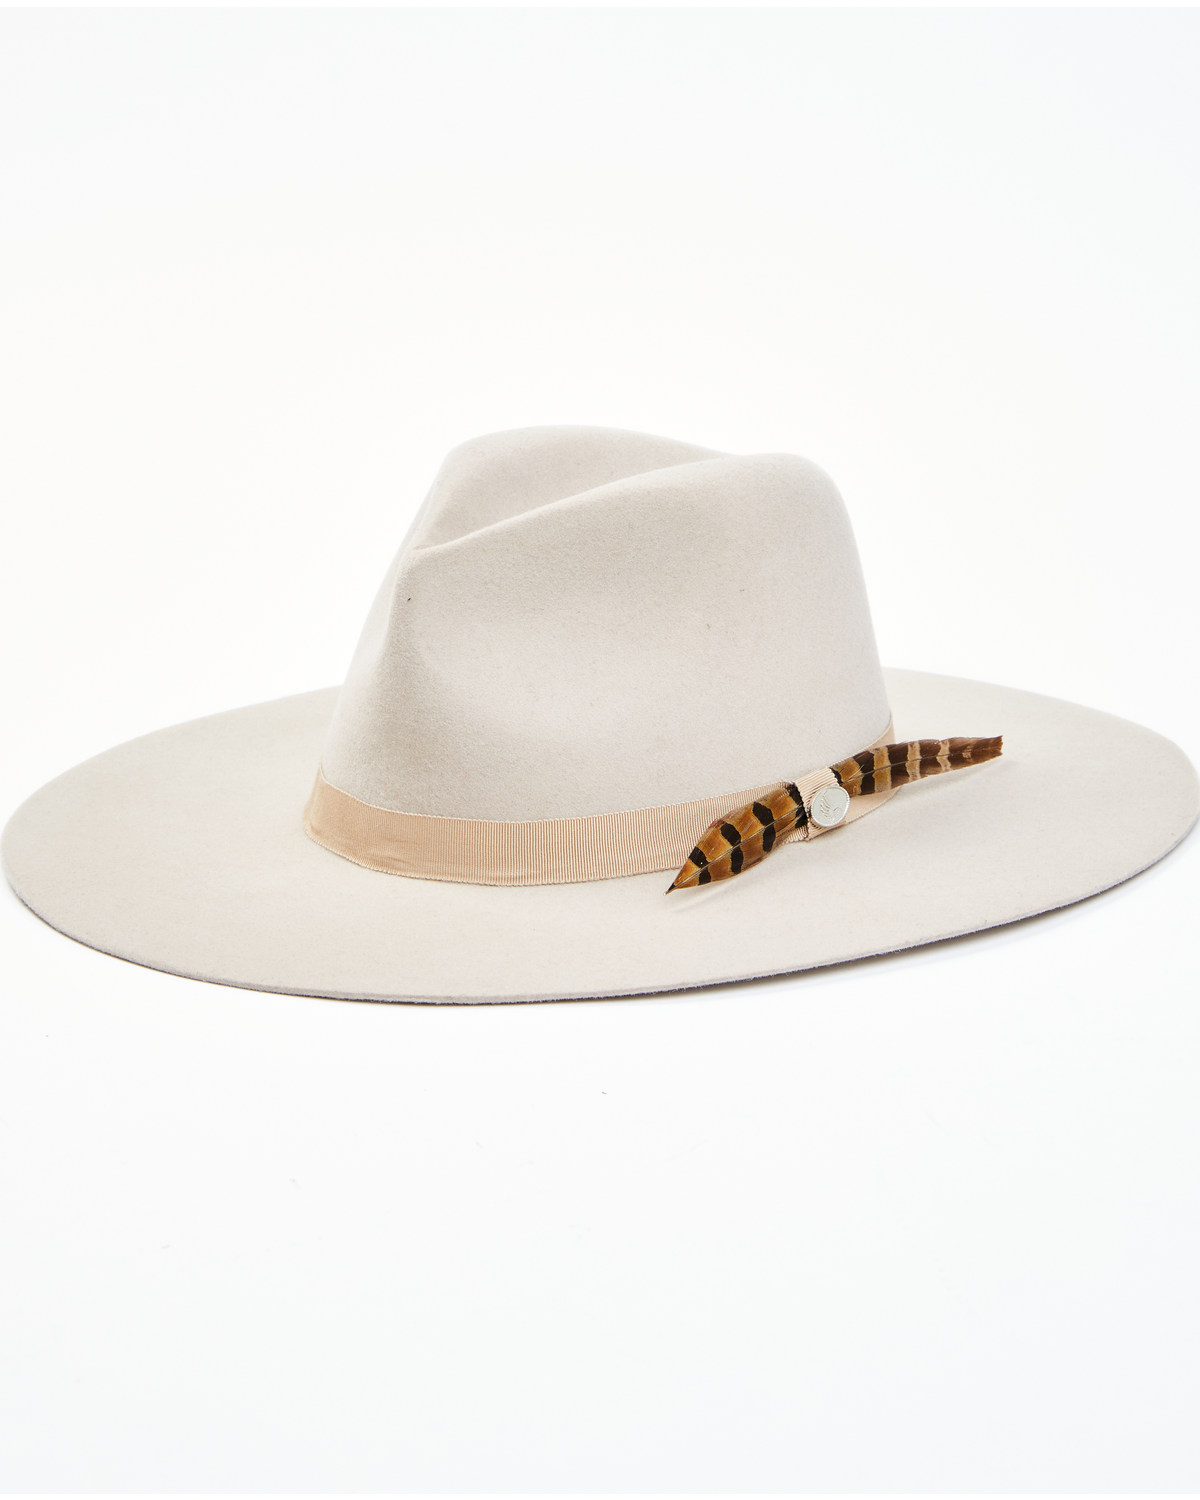 Cody James 9 Band 3X Felt Western Fashion Hat